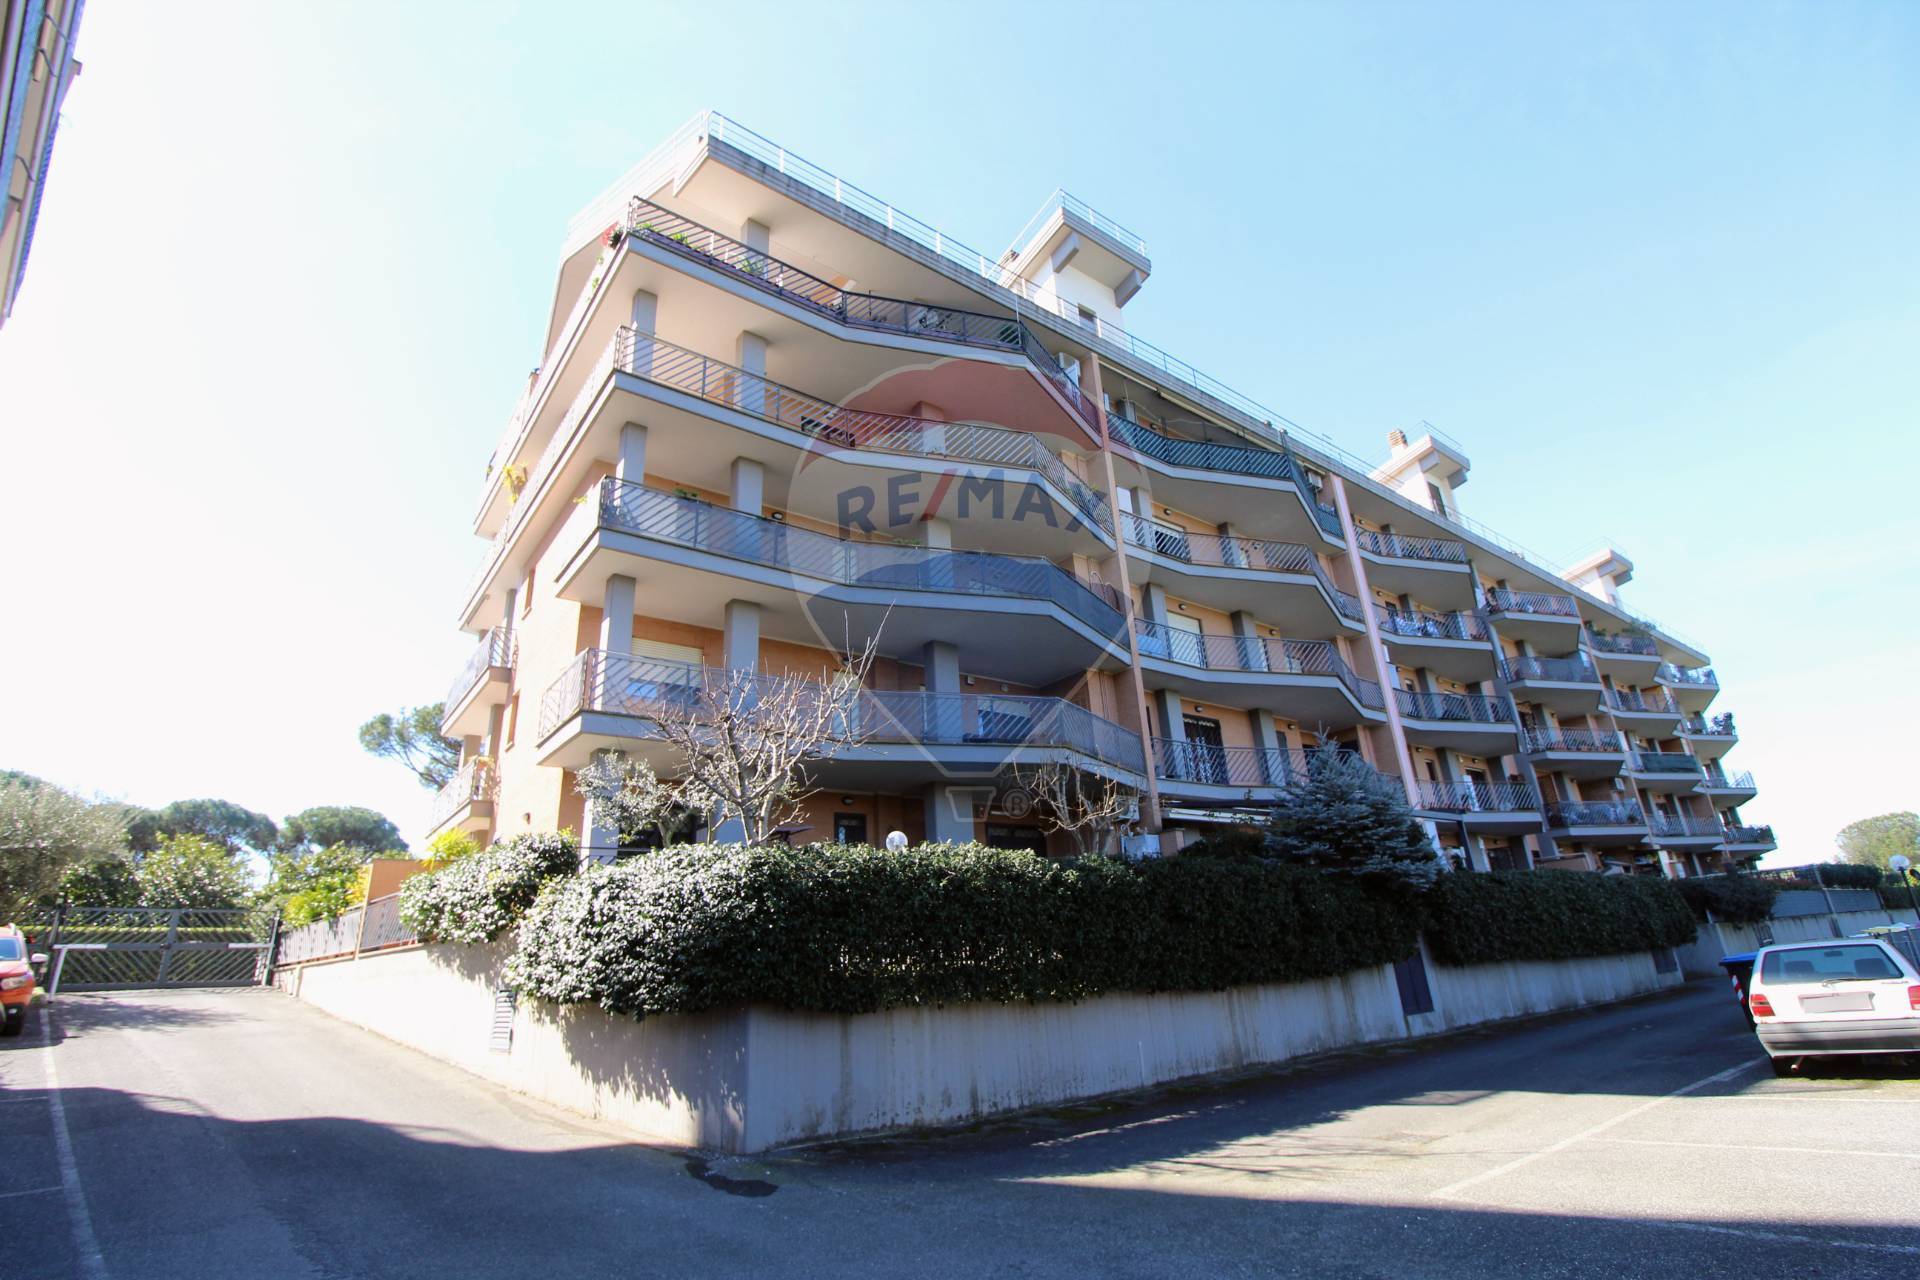 Appartamento in vendita a Roma, 4 locali, zona Zona: 41 . Castel di Guido - Casalotti - Valle Santa, prezzo € 195.000 | CambioCasa.it